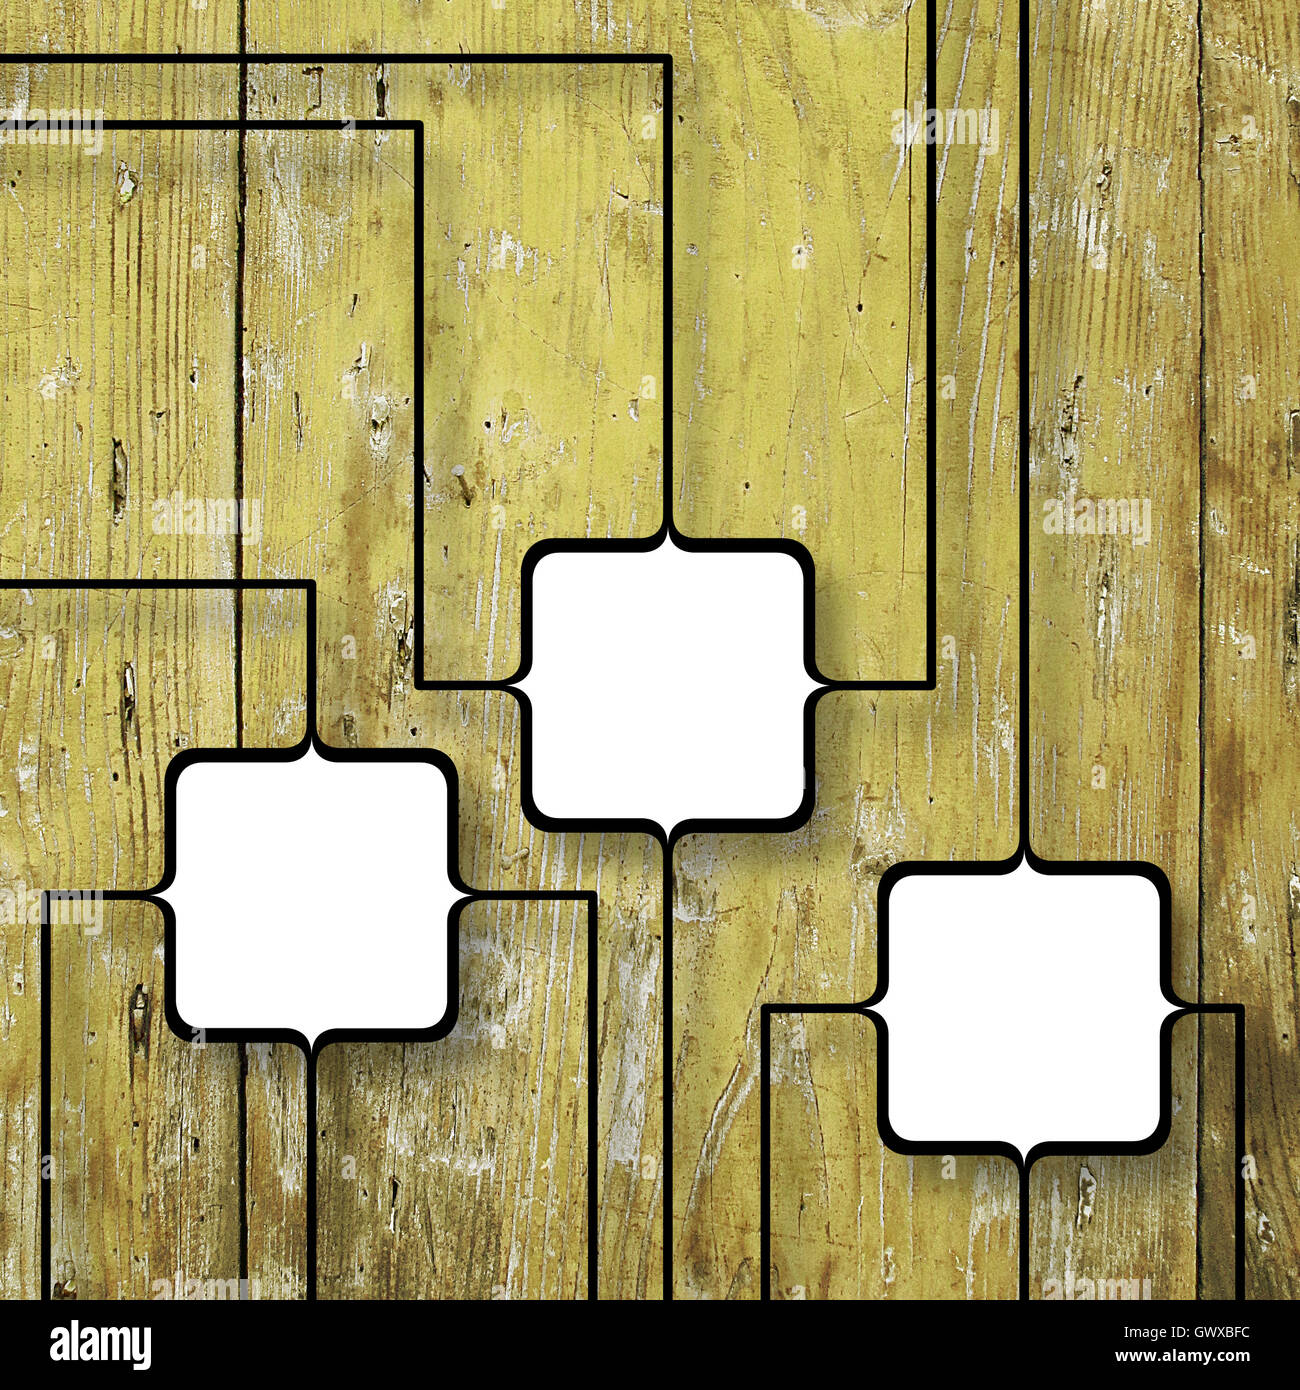 Près de trois cadres photo vierge carré noir liés ensemble sur les planches de bois jaune old weathered background Banque D'Images